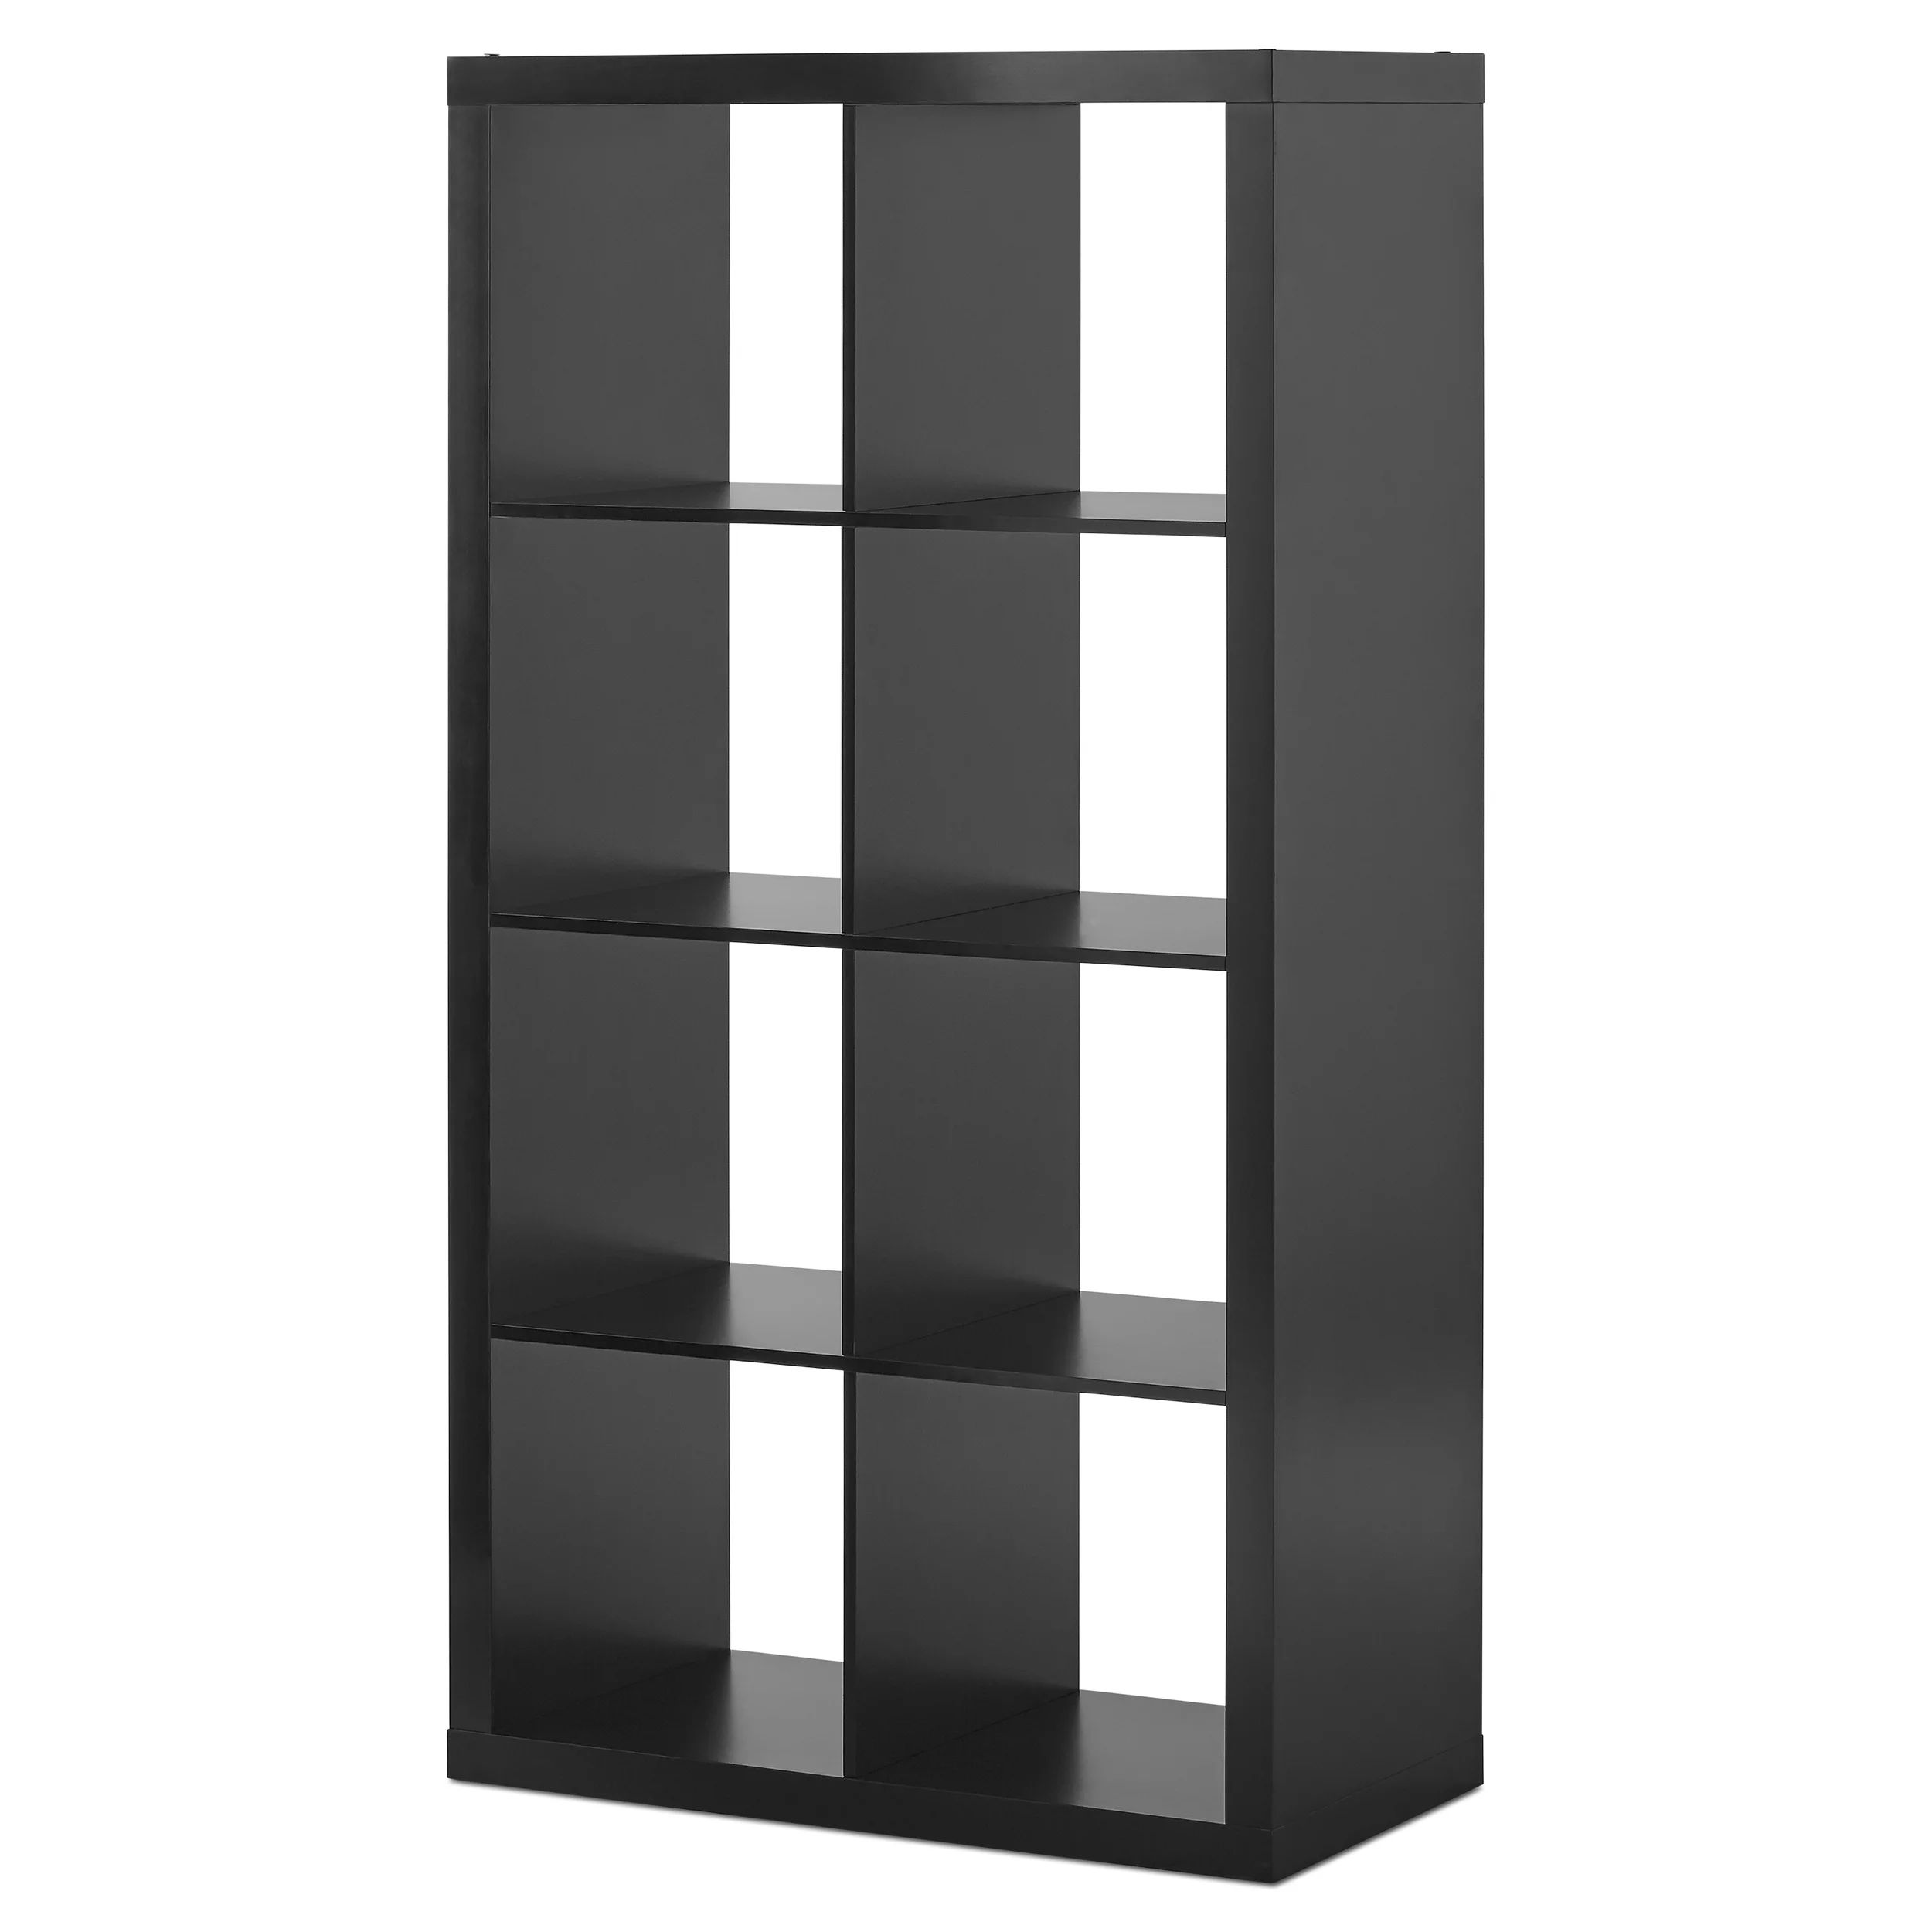 Better Homes & Gardens 8-Cube Storage Organizer, Solid Black - Walmart.com | Walmart (US)